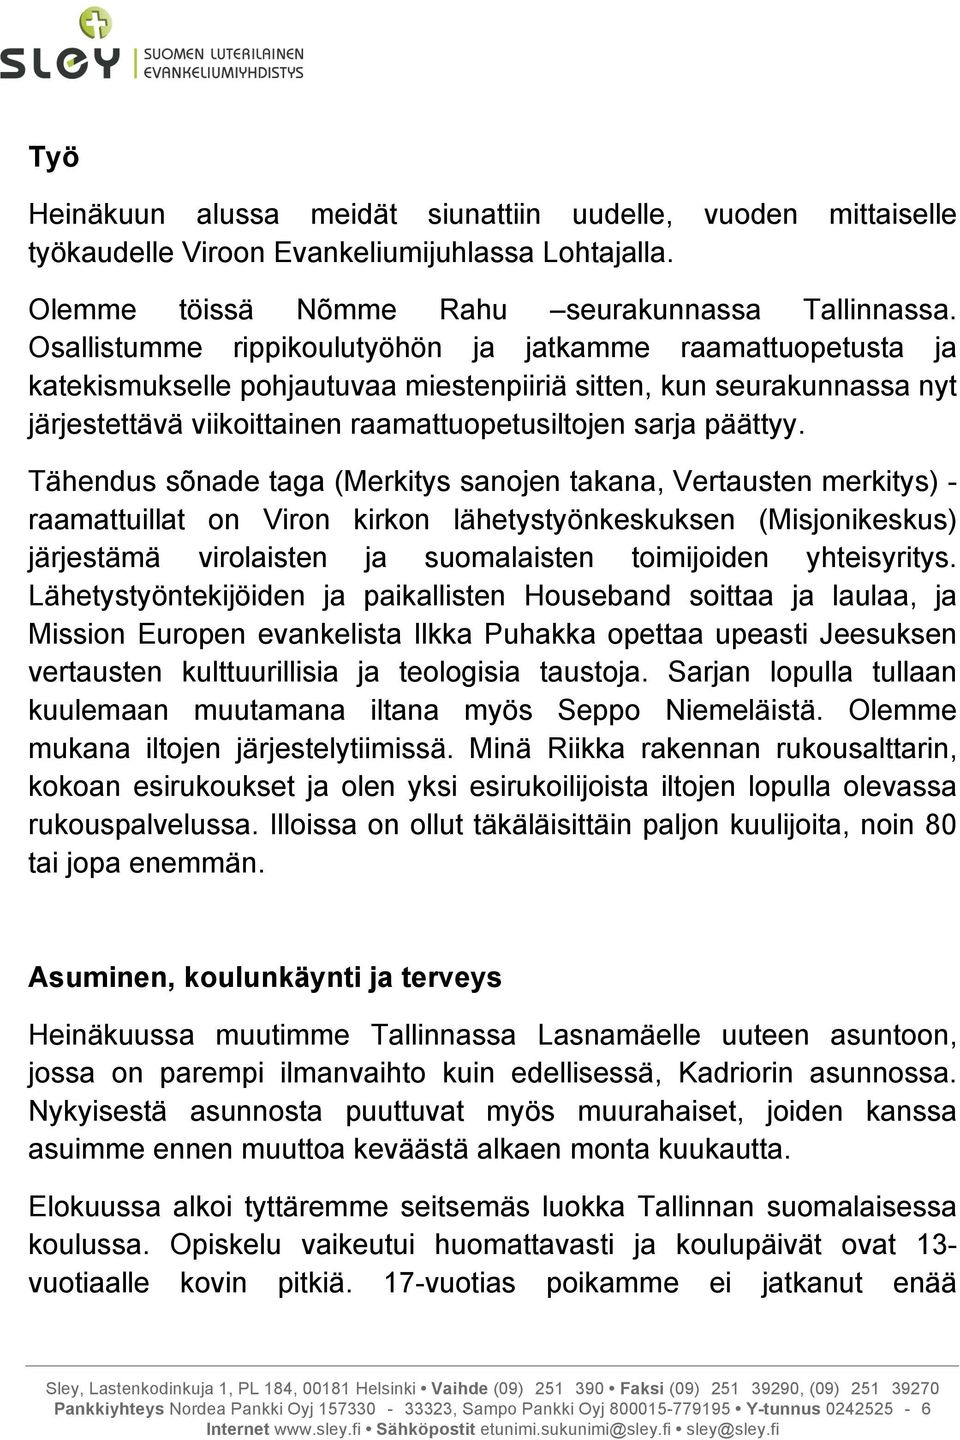 Tähendus sõnade taga (Merkitys sanojen takana, Vertausten merkitys) - raamattuillat on Viron kirkon lähetystyönkeskuksen (Misjonikeskus) järjestämä virolaisten ja suomalaisten toimijoiden